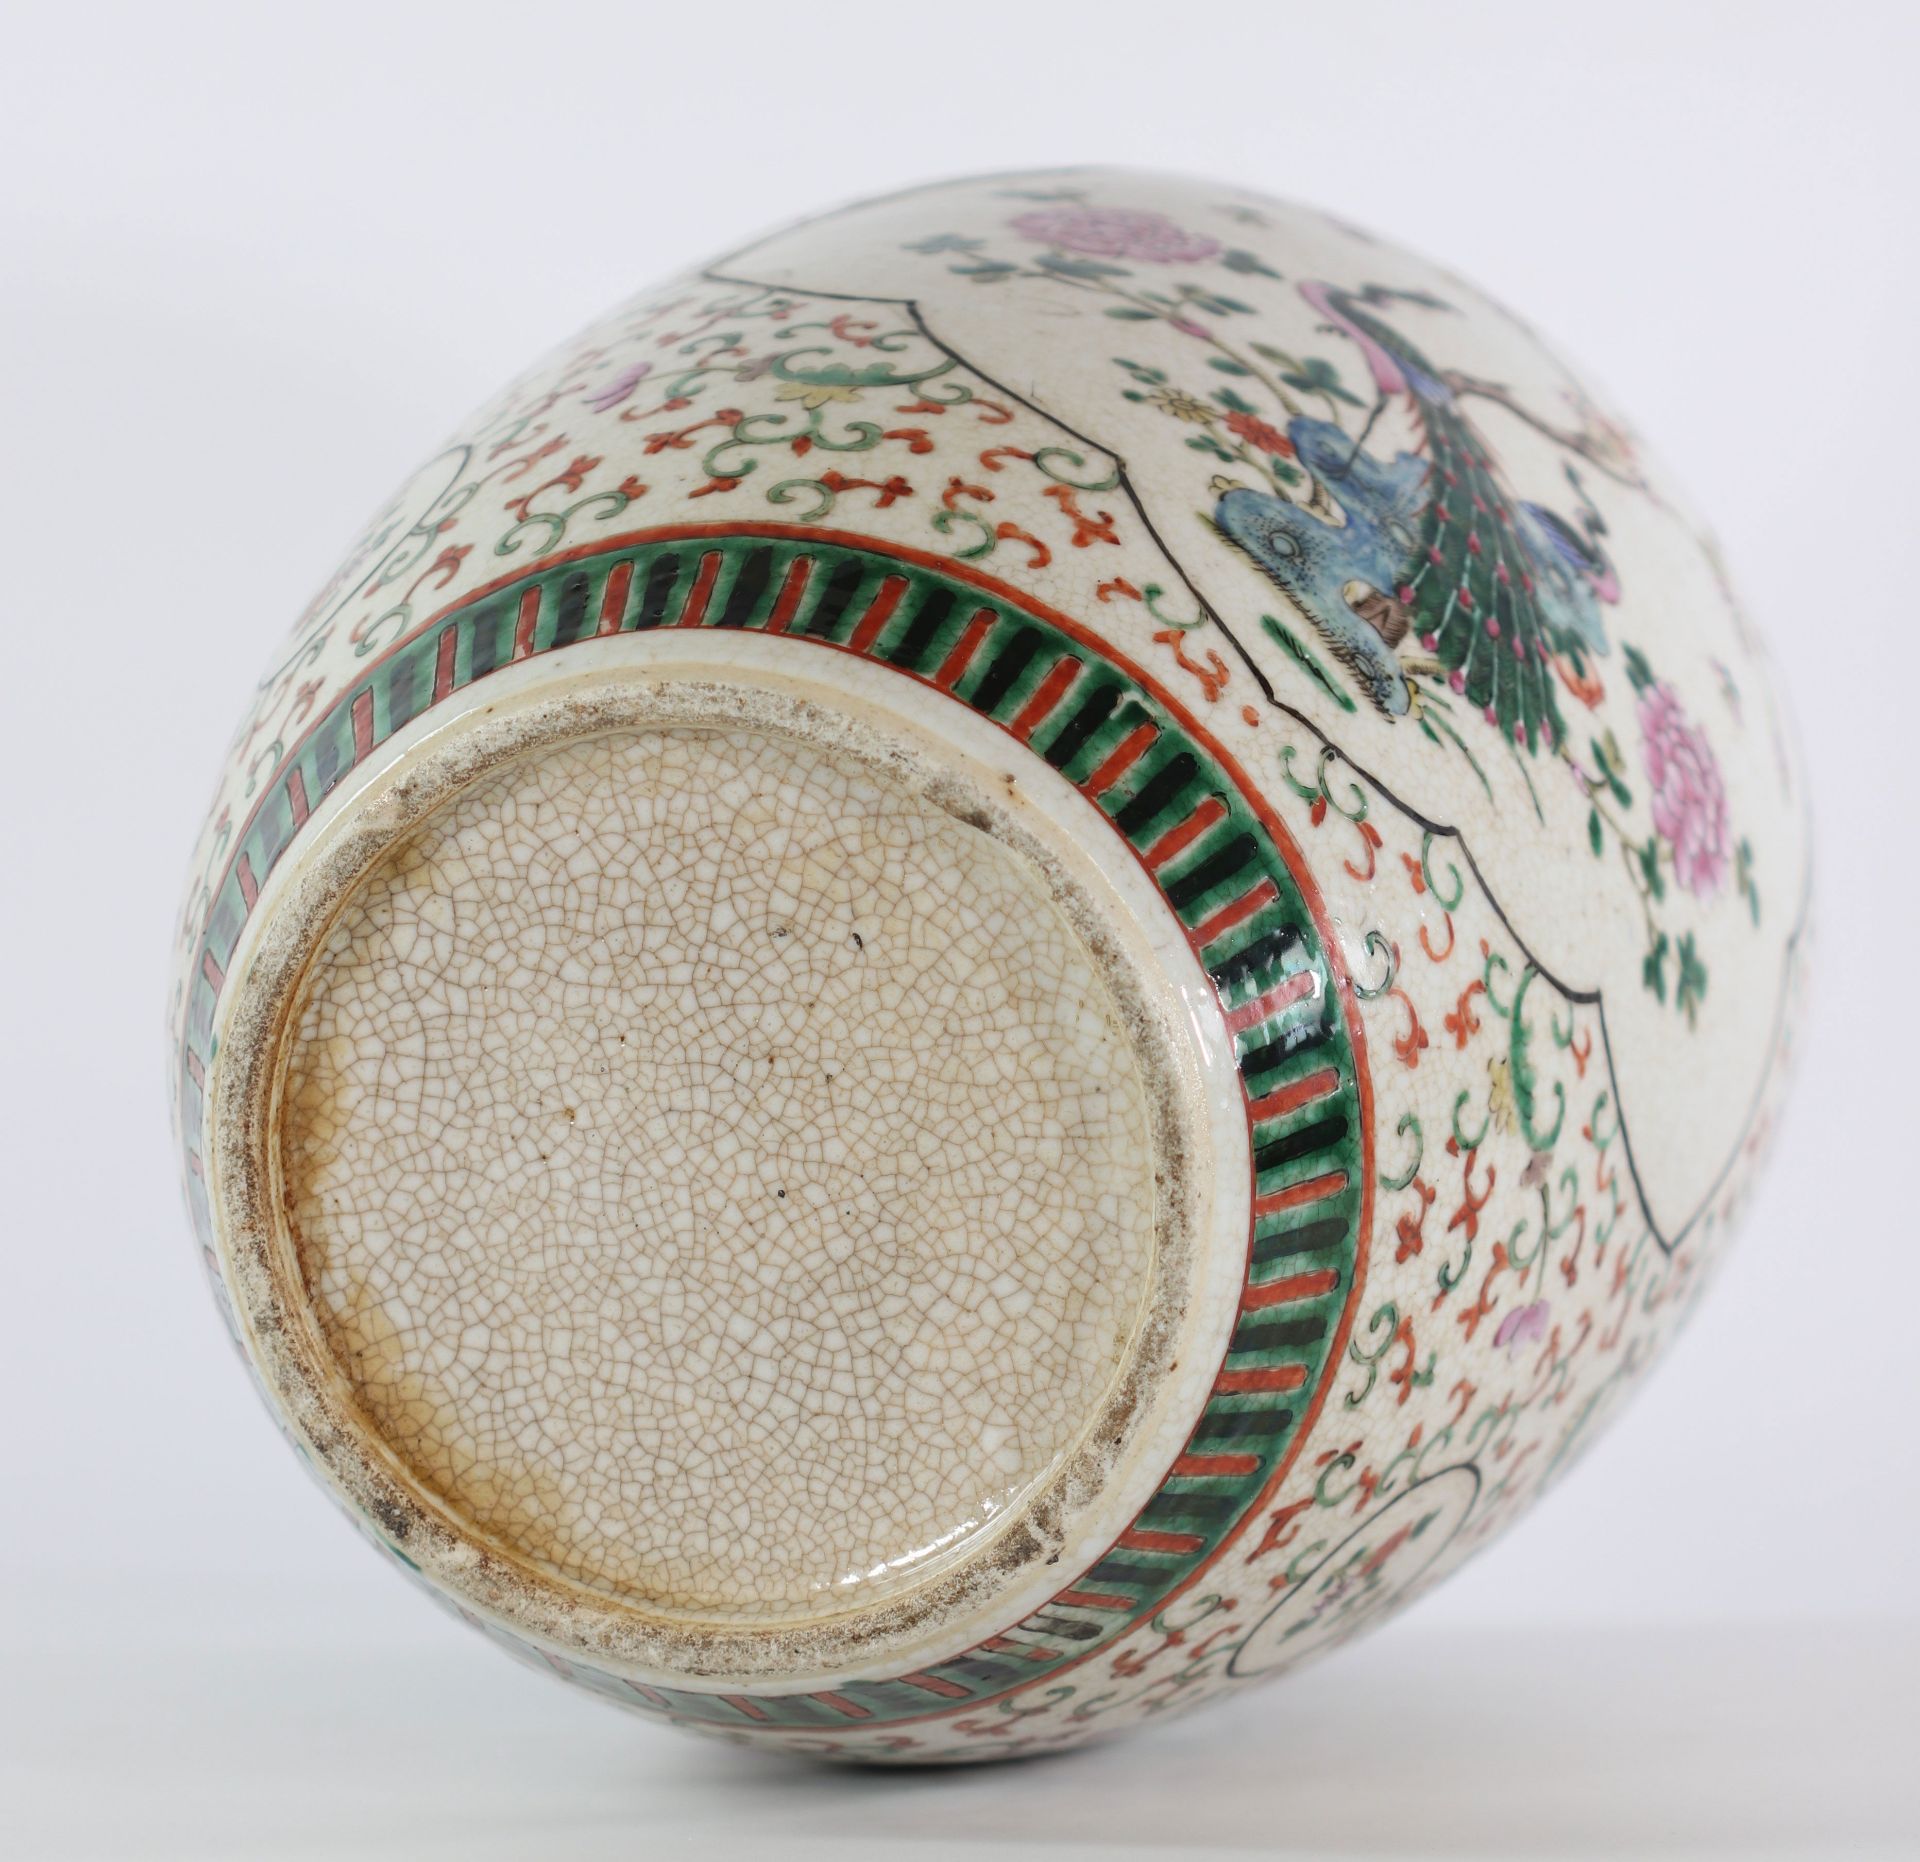 China cracked porcelain vase 19th century furniture decor - Image 5 of 5